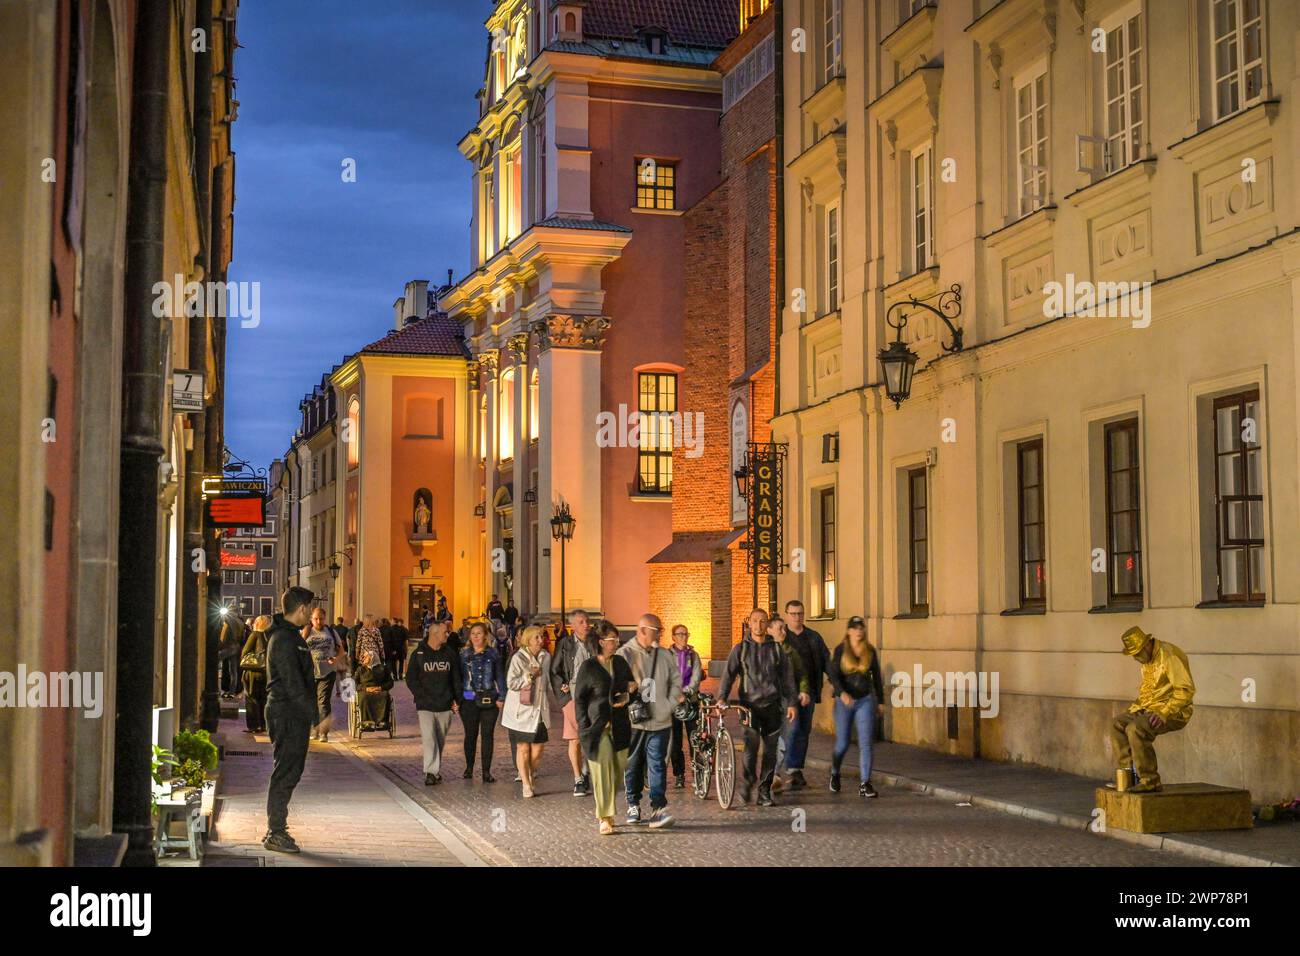 Abendliche Straßenszene, Warschauer Kathedale, Swietojanska, Altstadt Stare Miasto, Warschau, Woiwodschaft Masowien, Polen Stock Photo